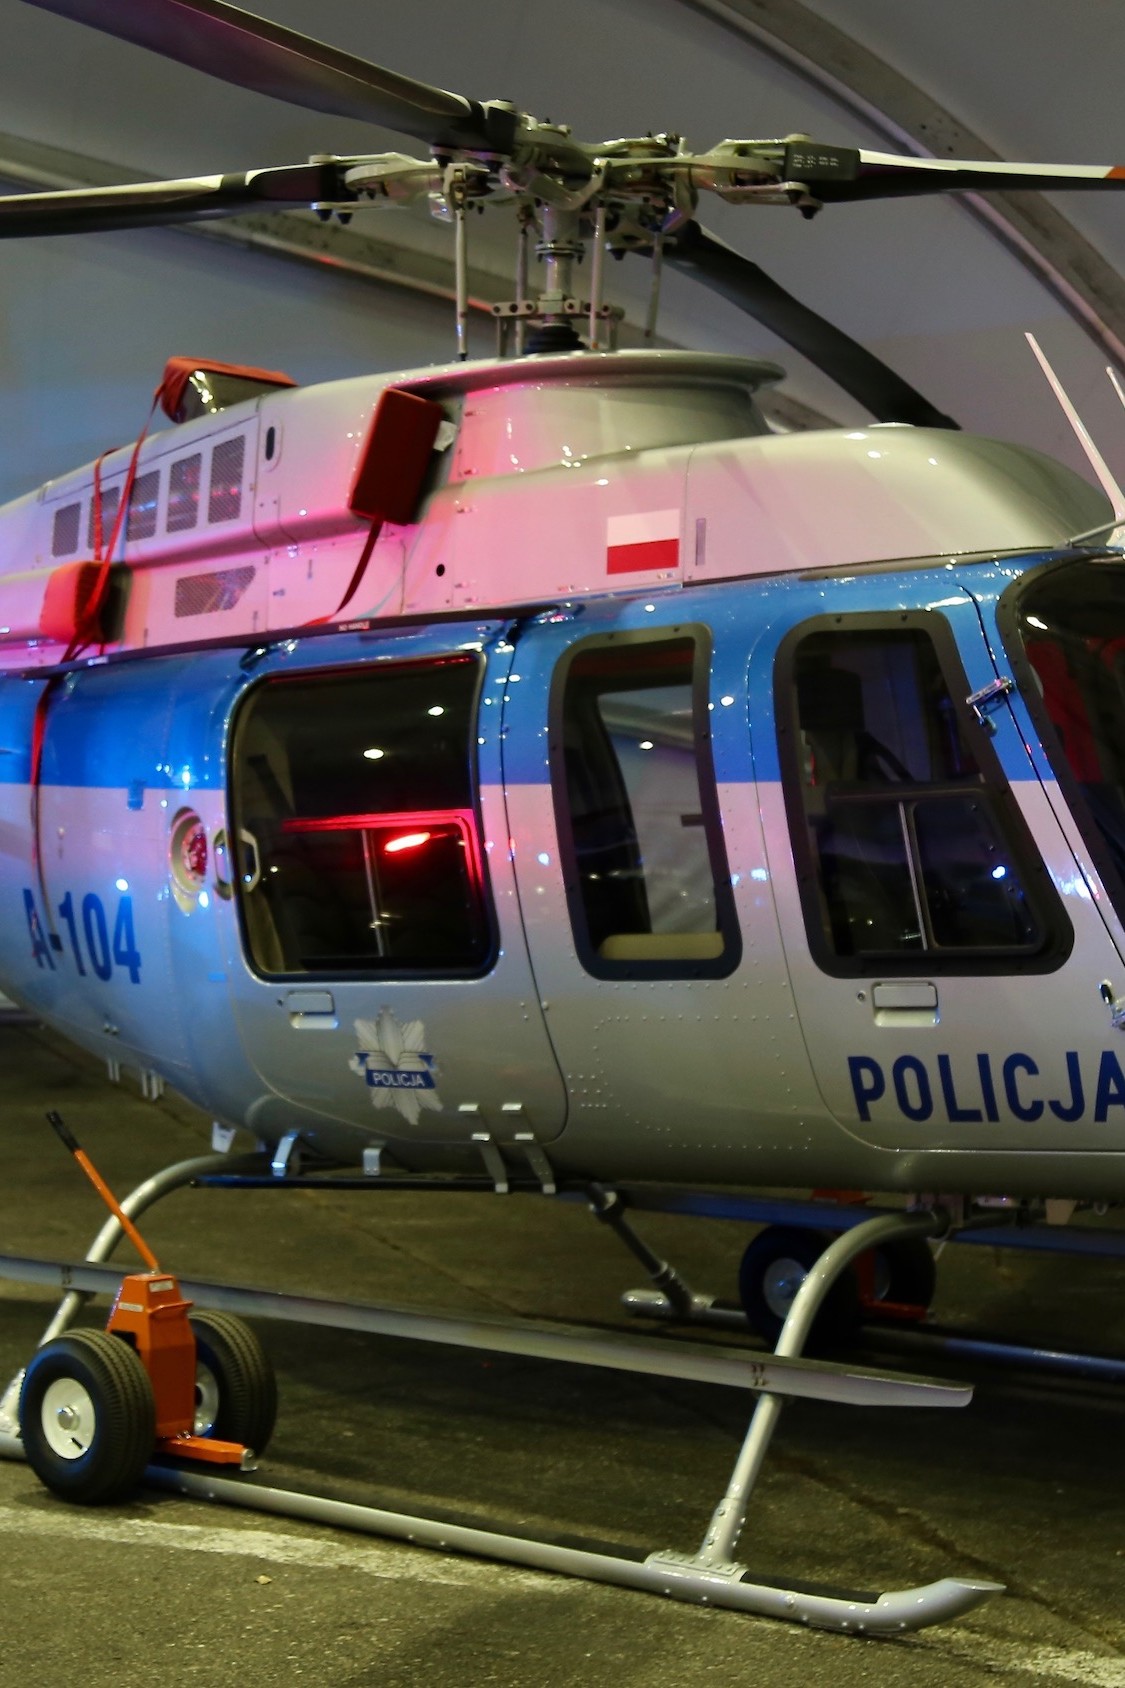 Pierwszy policyjny Bell 407 GXi przed instalacją głowicy optoelektronicznej i szperacza. Fot. Marta Rachwalska/InfoSecurity24.pl